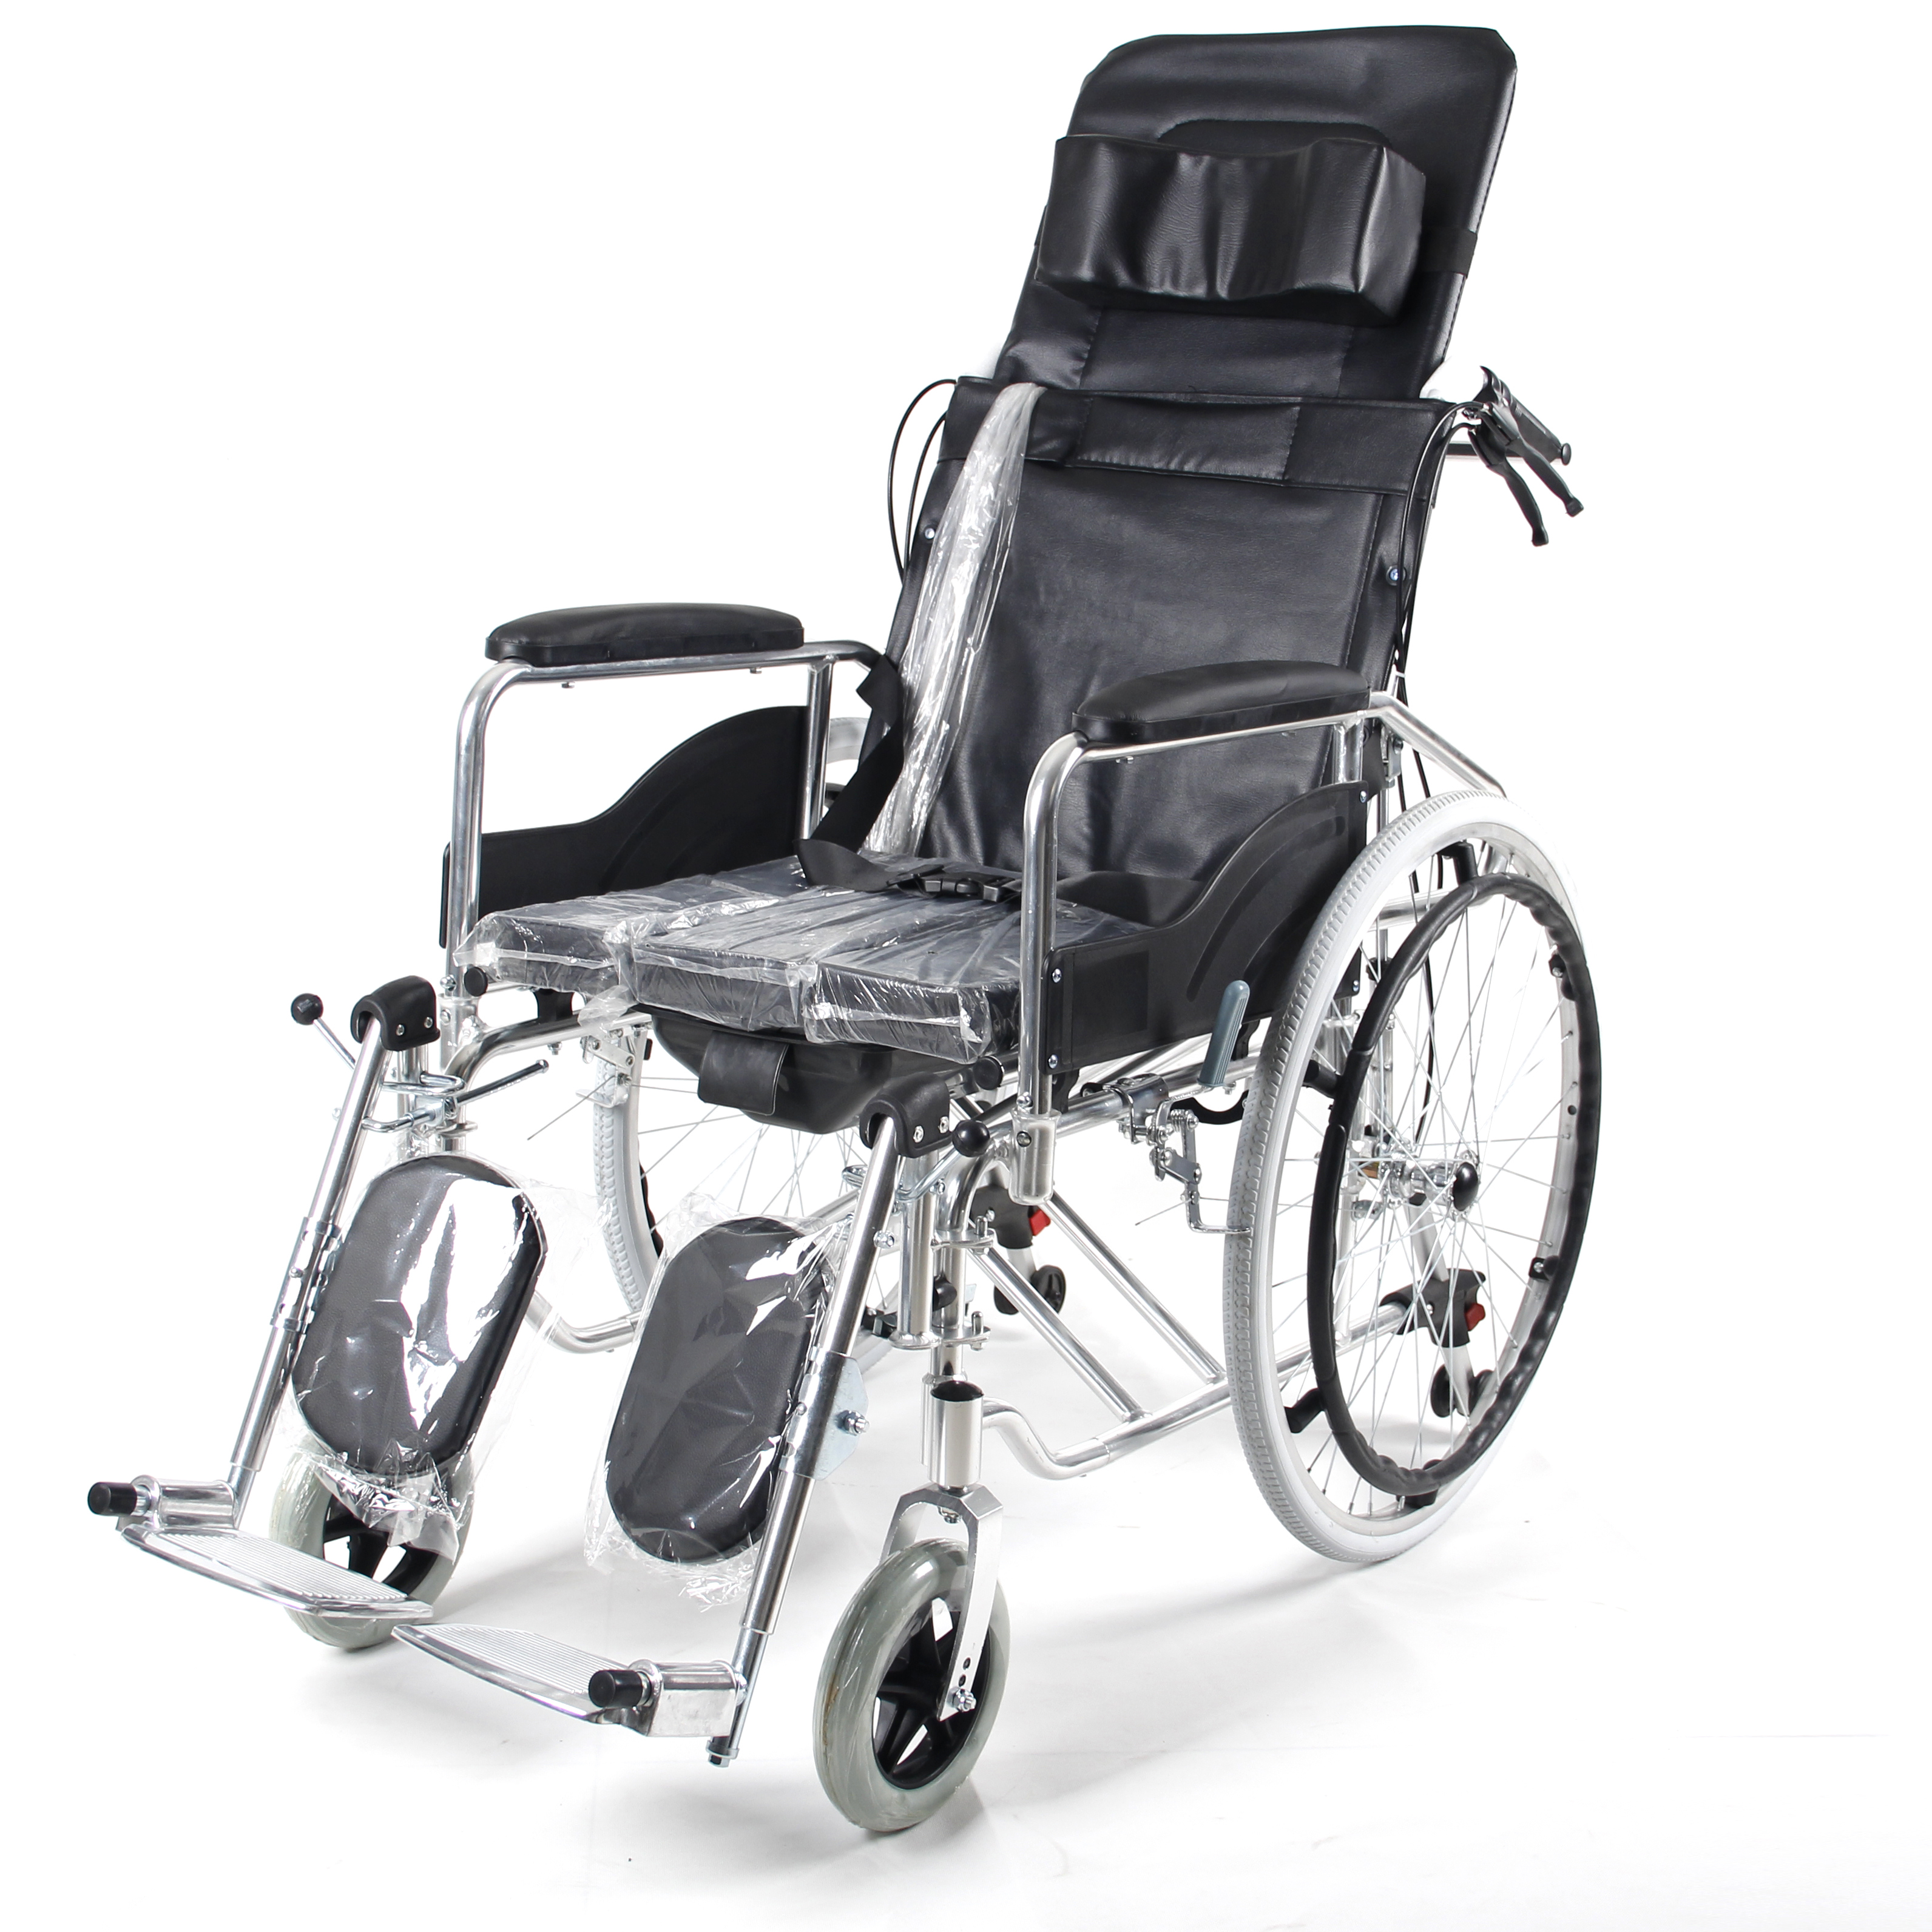 Folding multyfunksjonele hânmjittich draachbere rolstoel